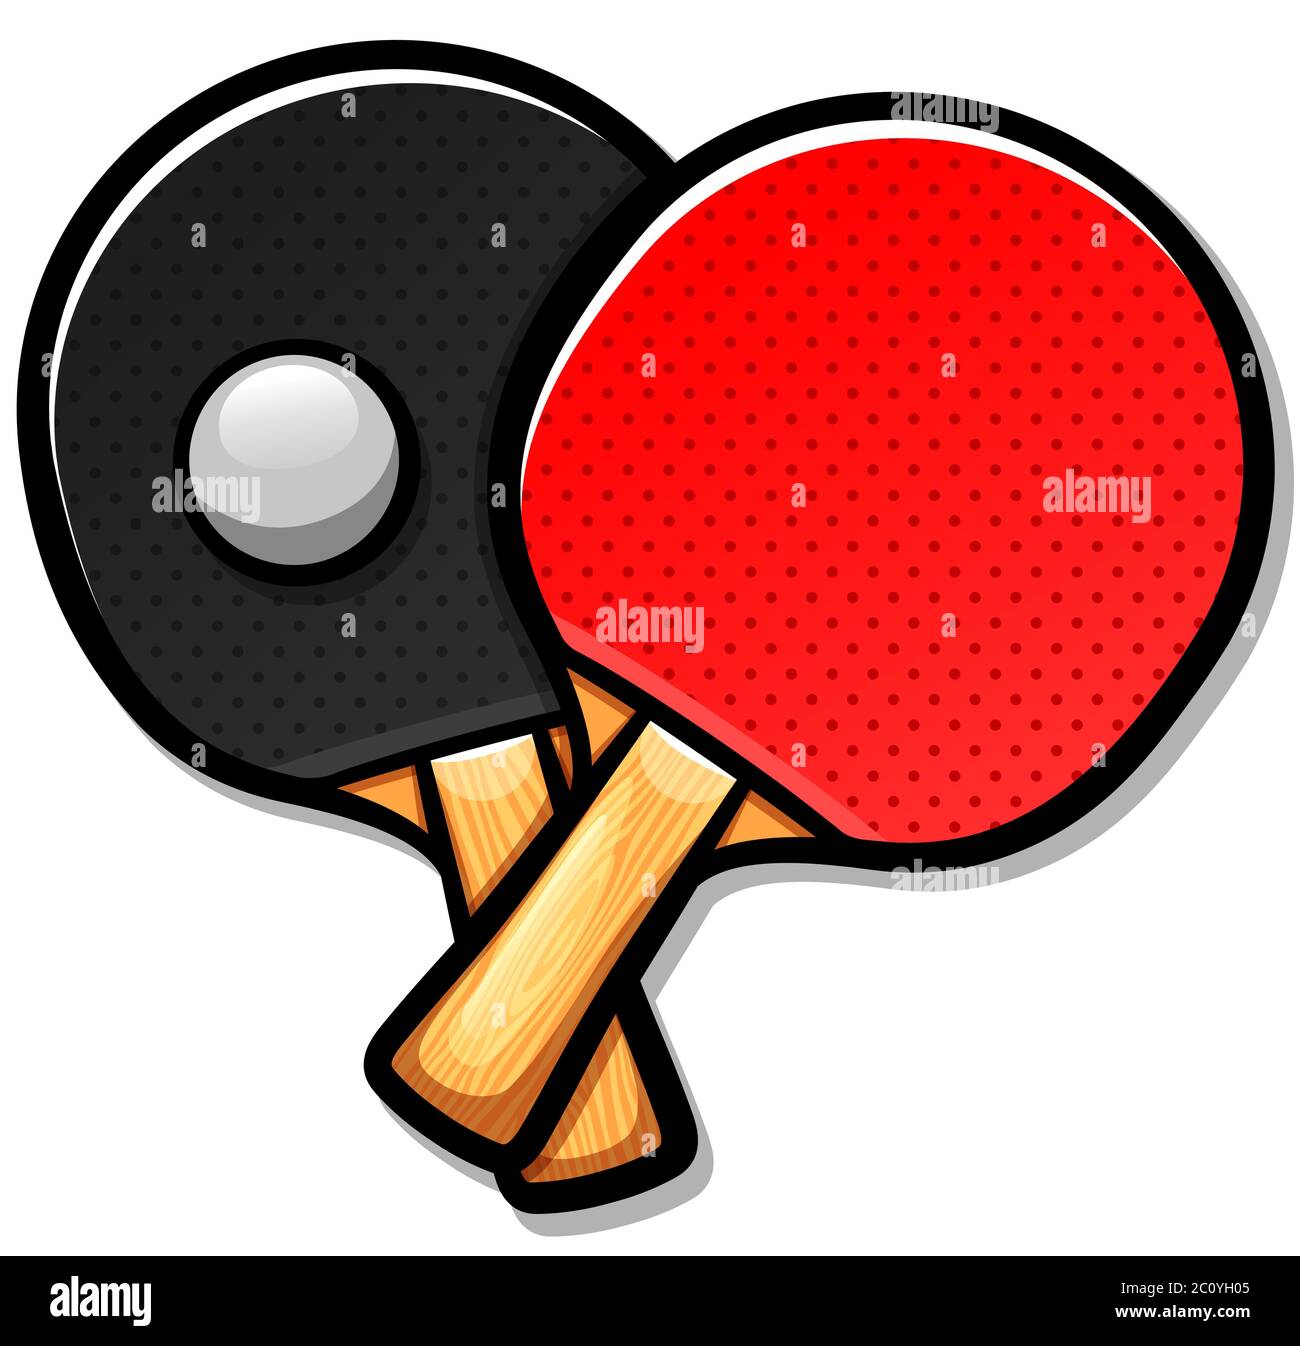 Illustrazione vettoriale del cartone animato delle pagaie da ping pong Illustrazione Vettoriale